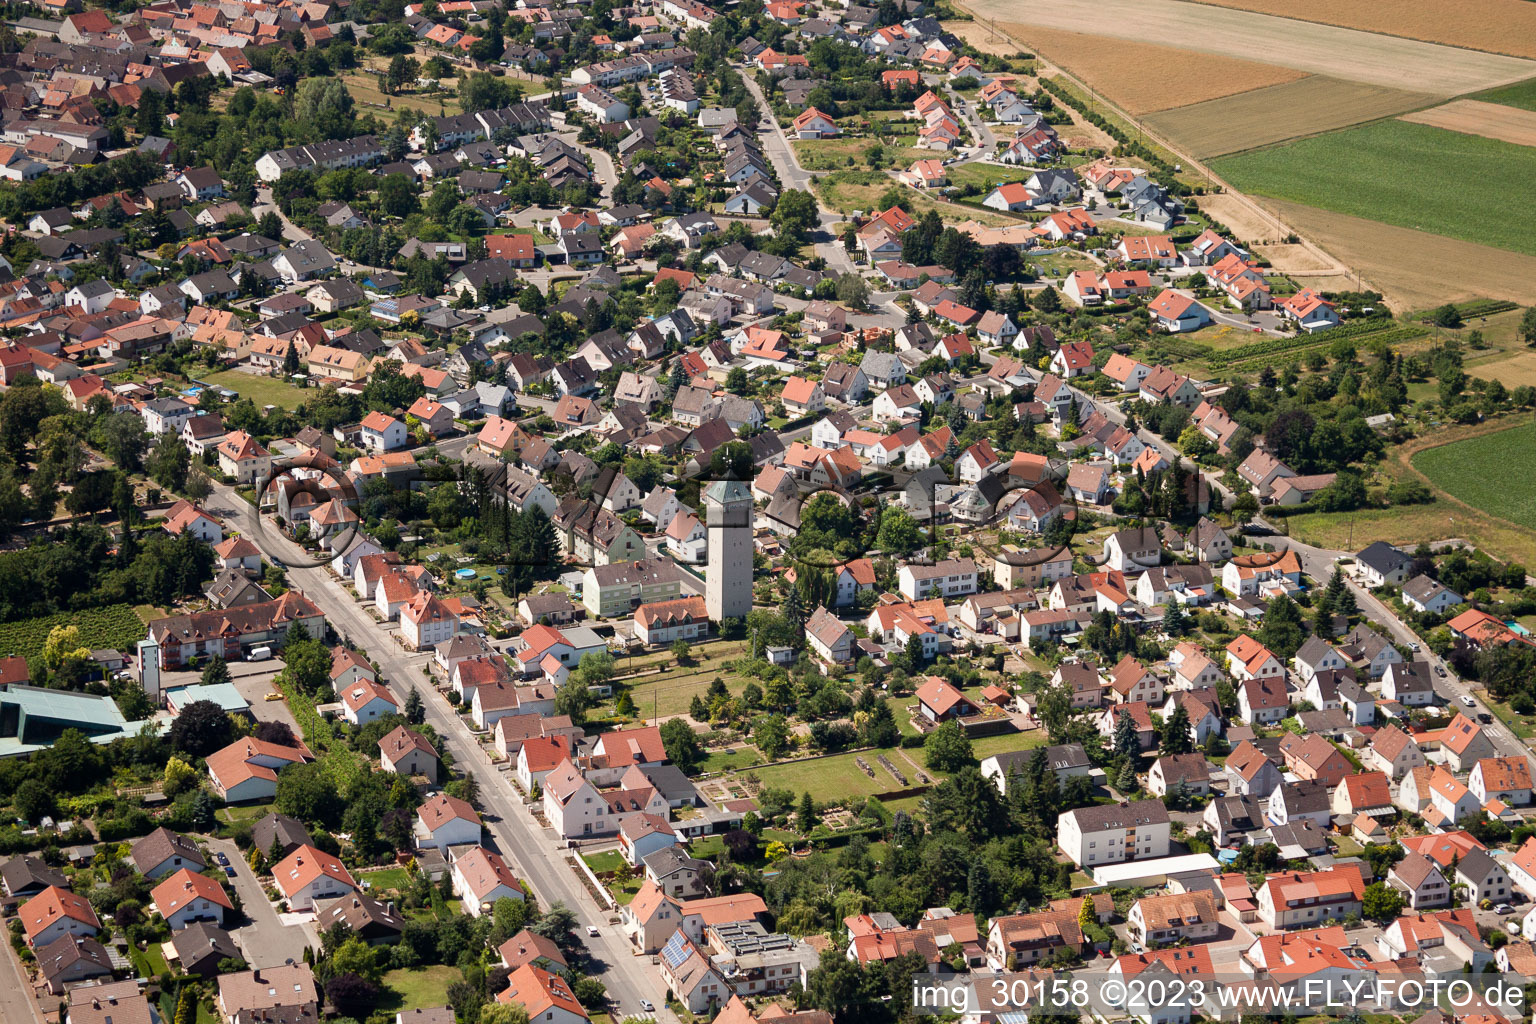 Vue aérienne de Château d'eau à le quartier Lachen in Neustadt an der Weinstraße dans le département Rhénanie-Palatinat, Allemagne